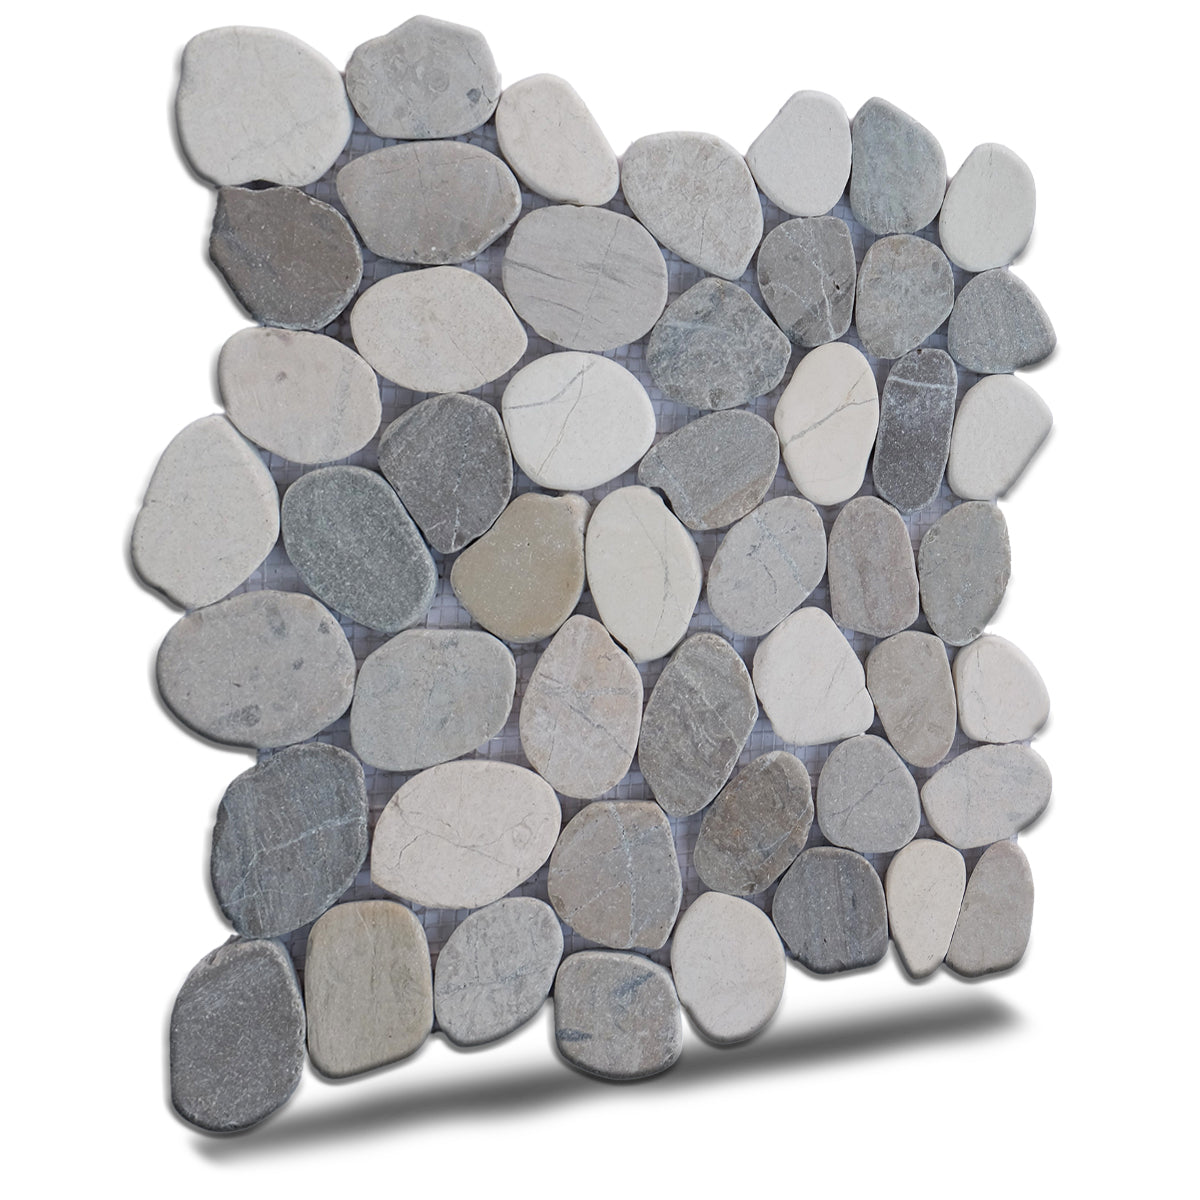 Pebble Mosaic Cloud Tiles, Cloud Sliced Pebble Mosaic Wall Floor Tile